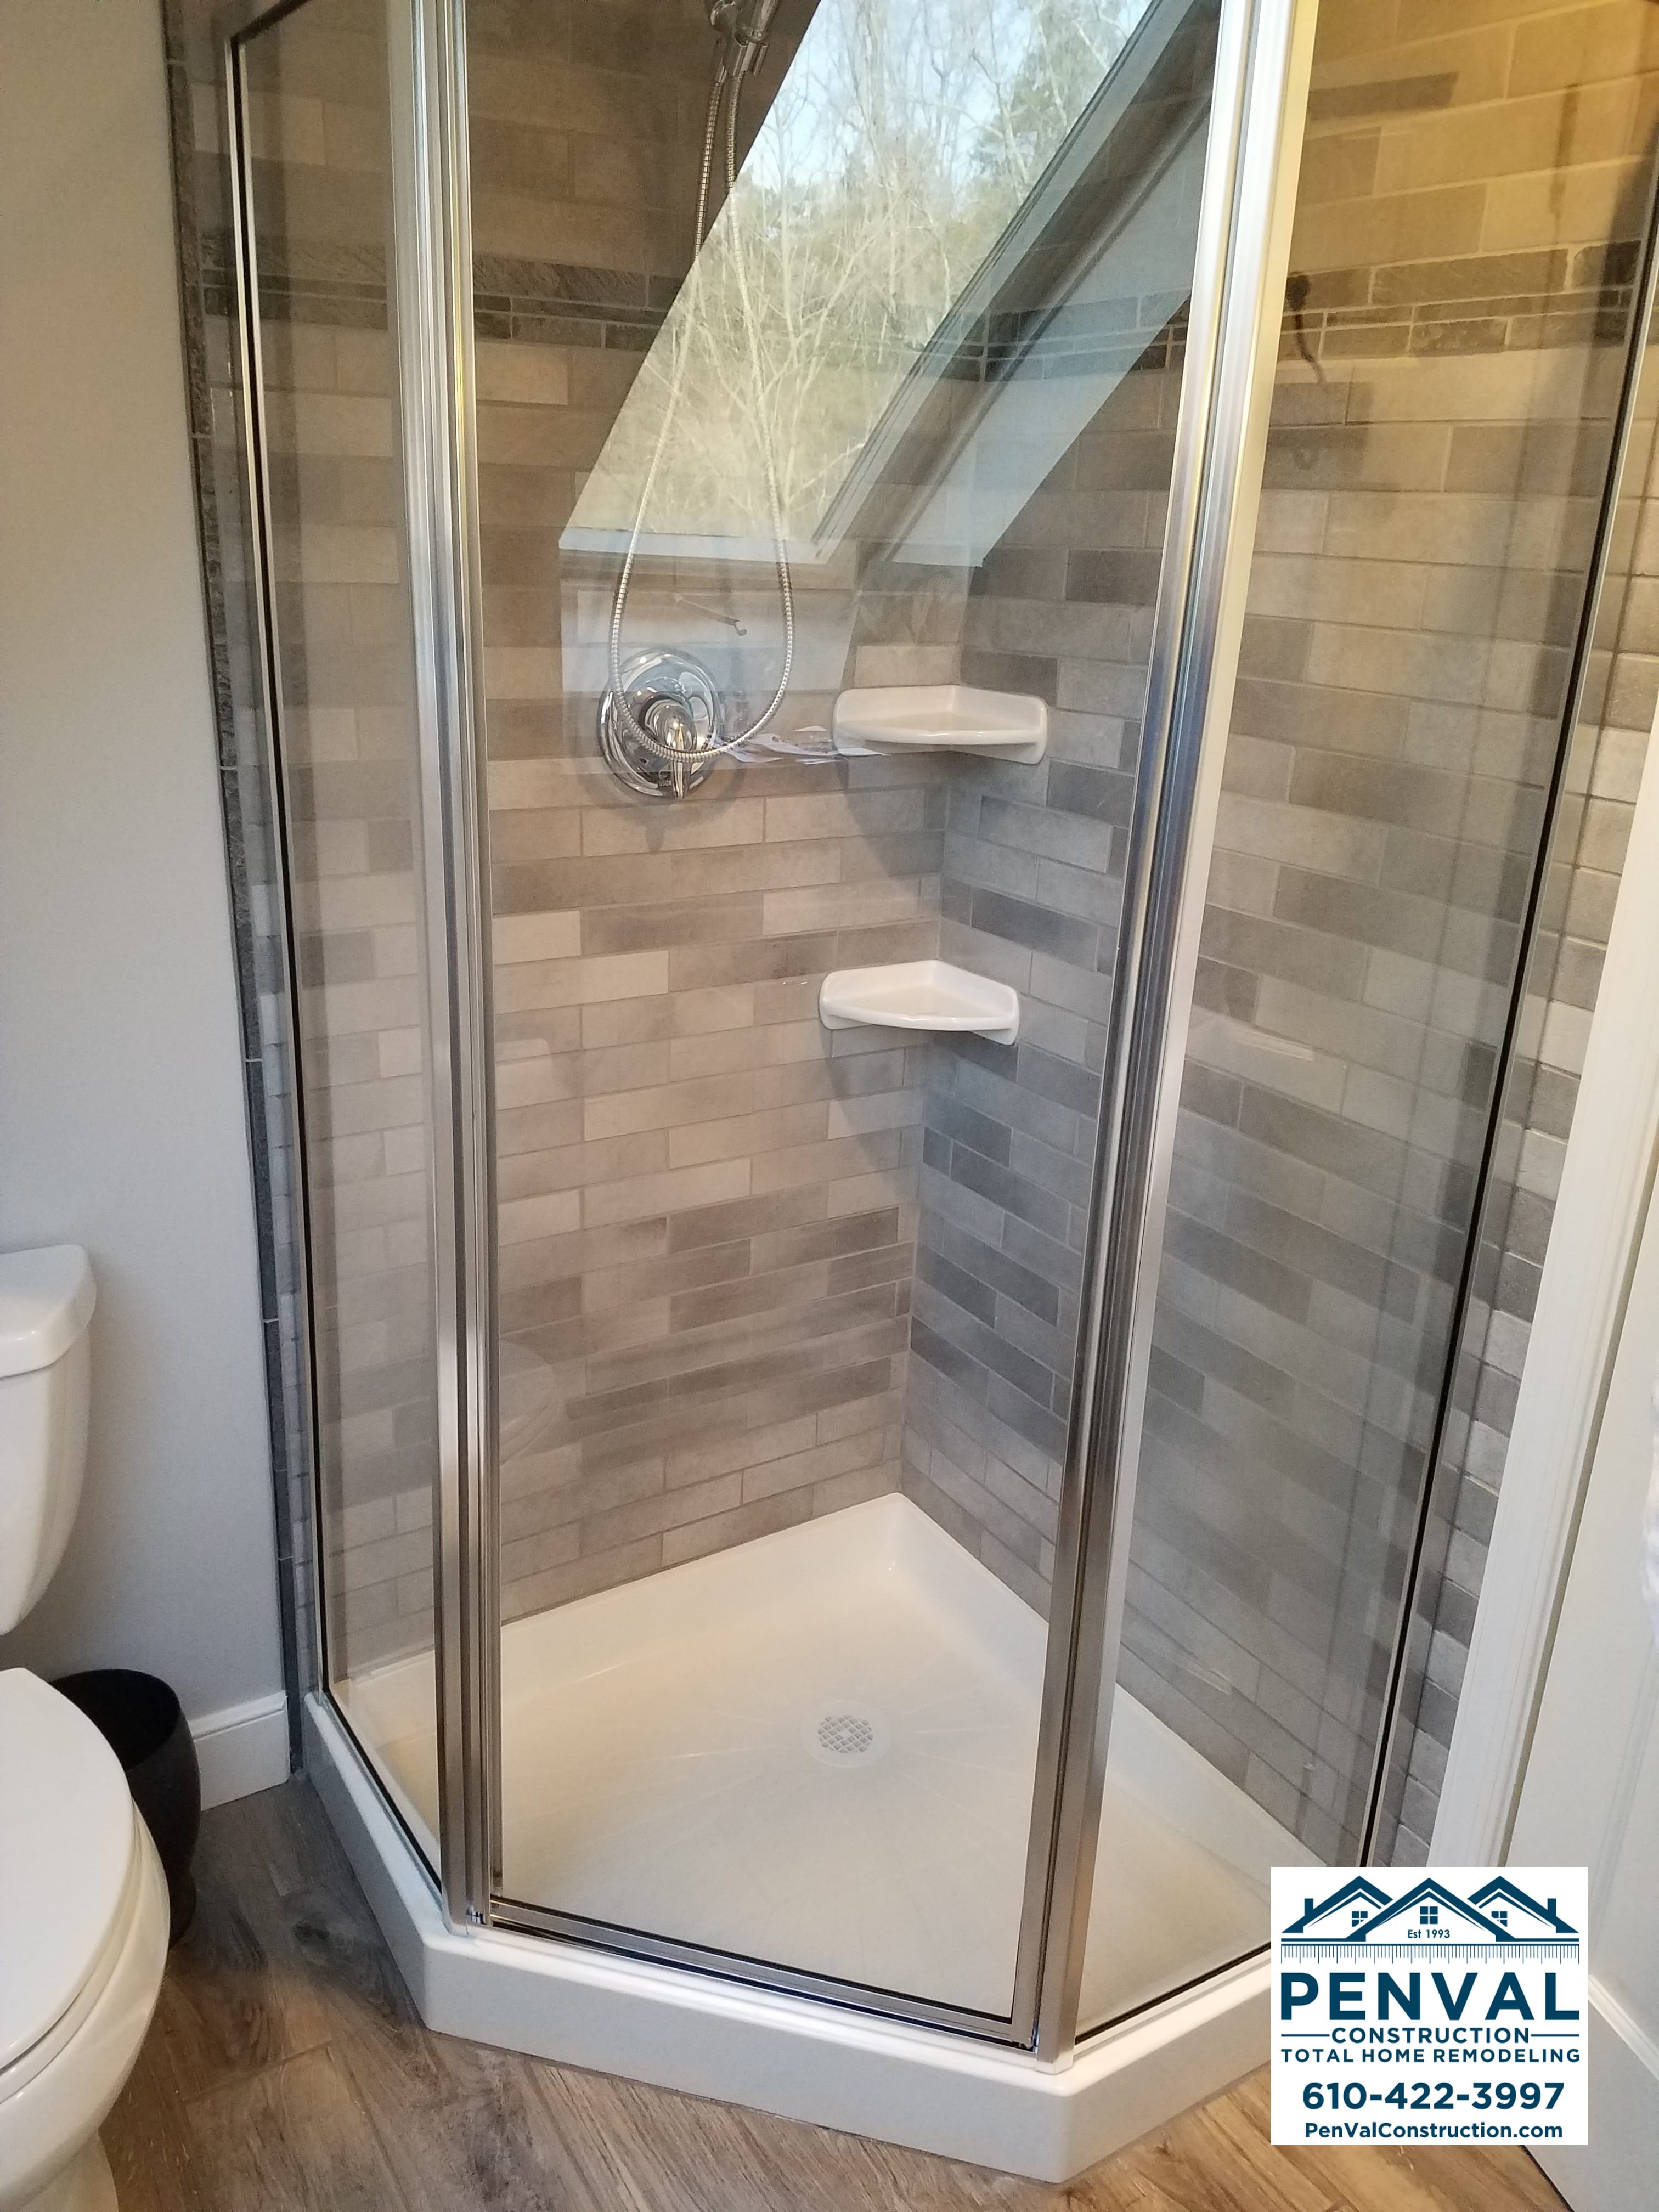 Bathroom Remodel - Ceramic Tile Shower Walls